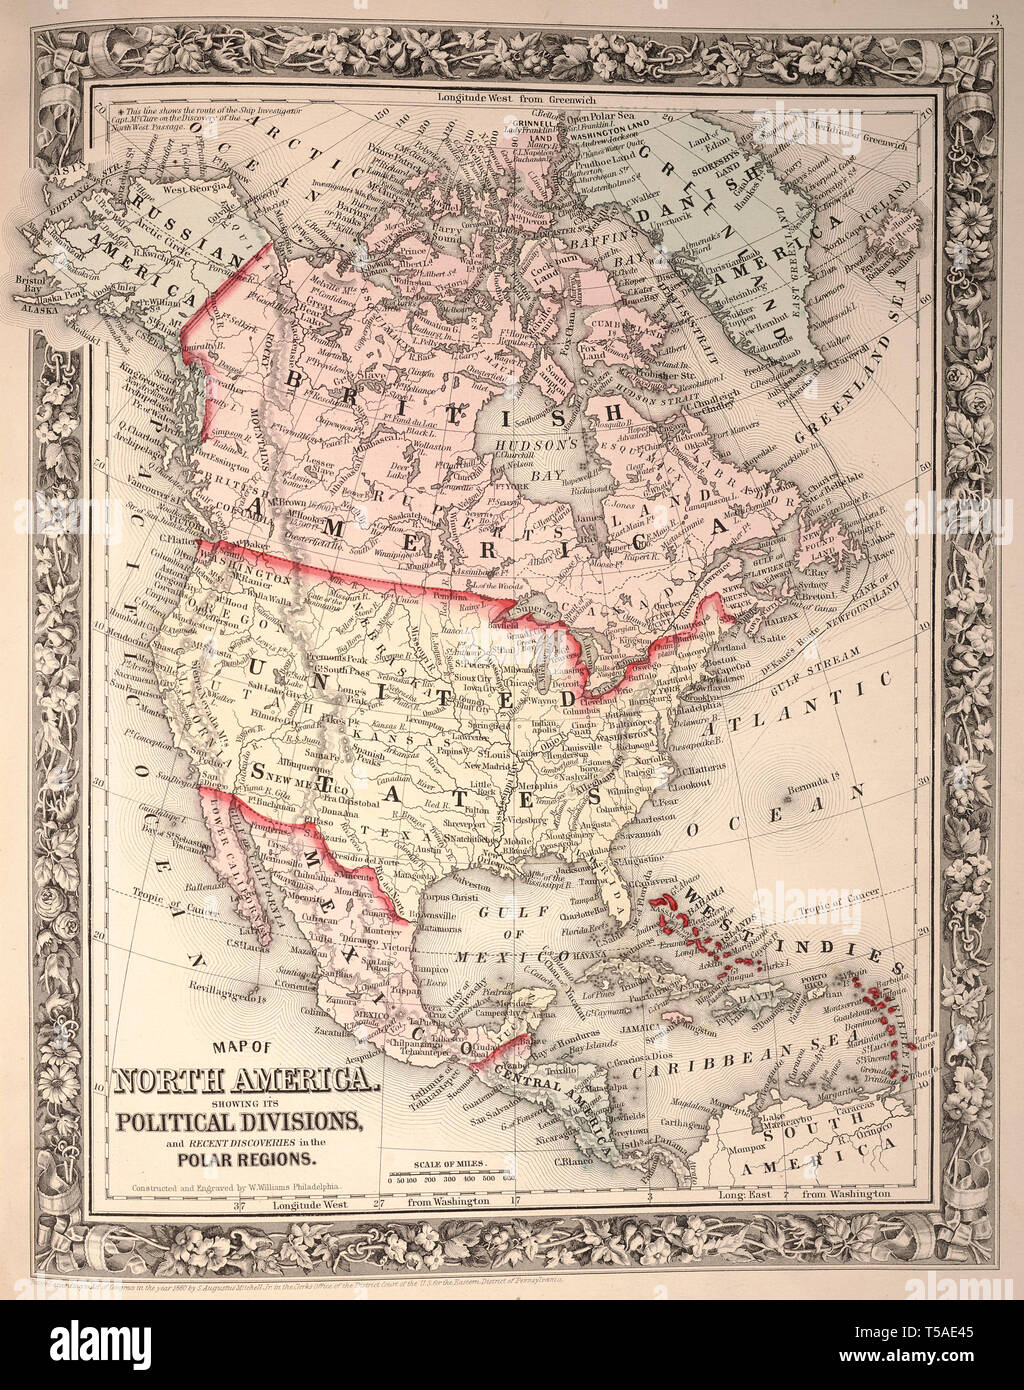 Vintage hermoso mapa dibujado a mano ilustraciones de Norteamérica desde el viejo libro. Puede ser utilizado como elemento decorativo o póster para el diseño de interiores. Foto de stock